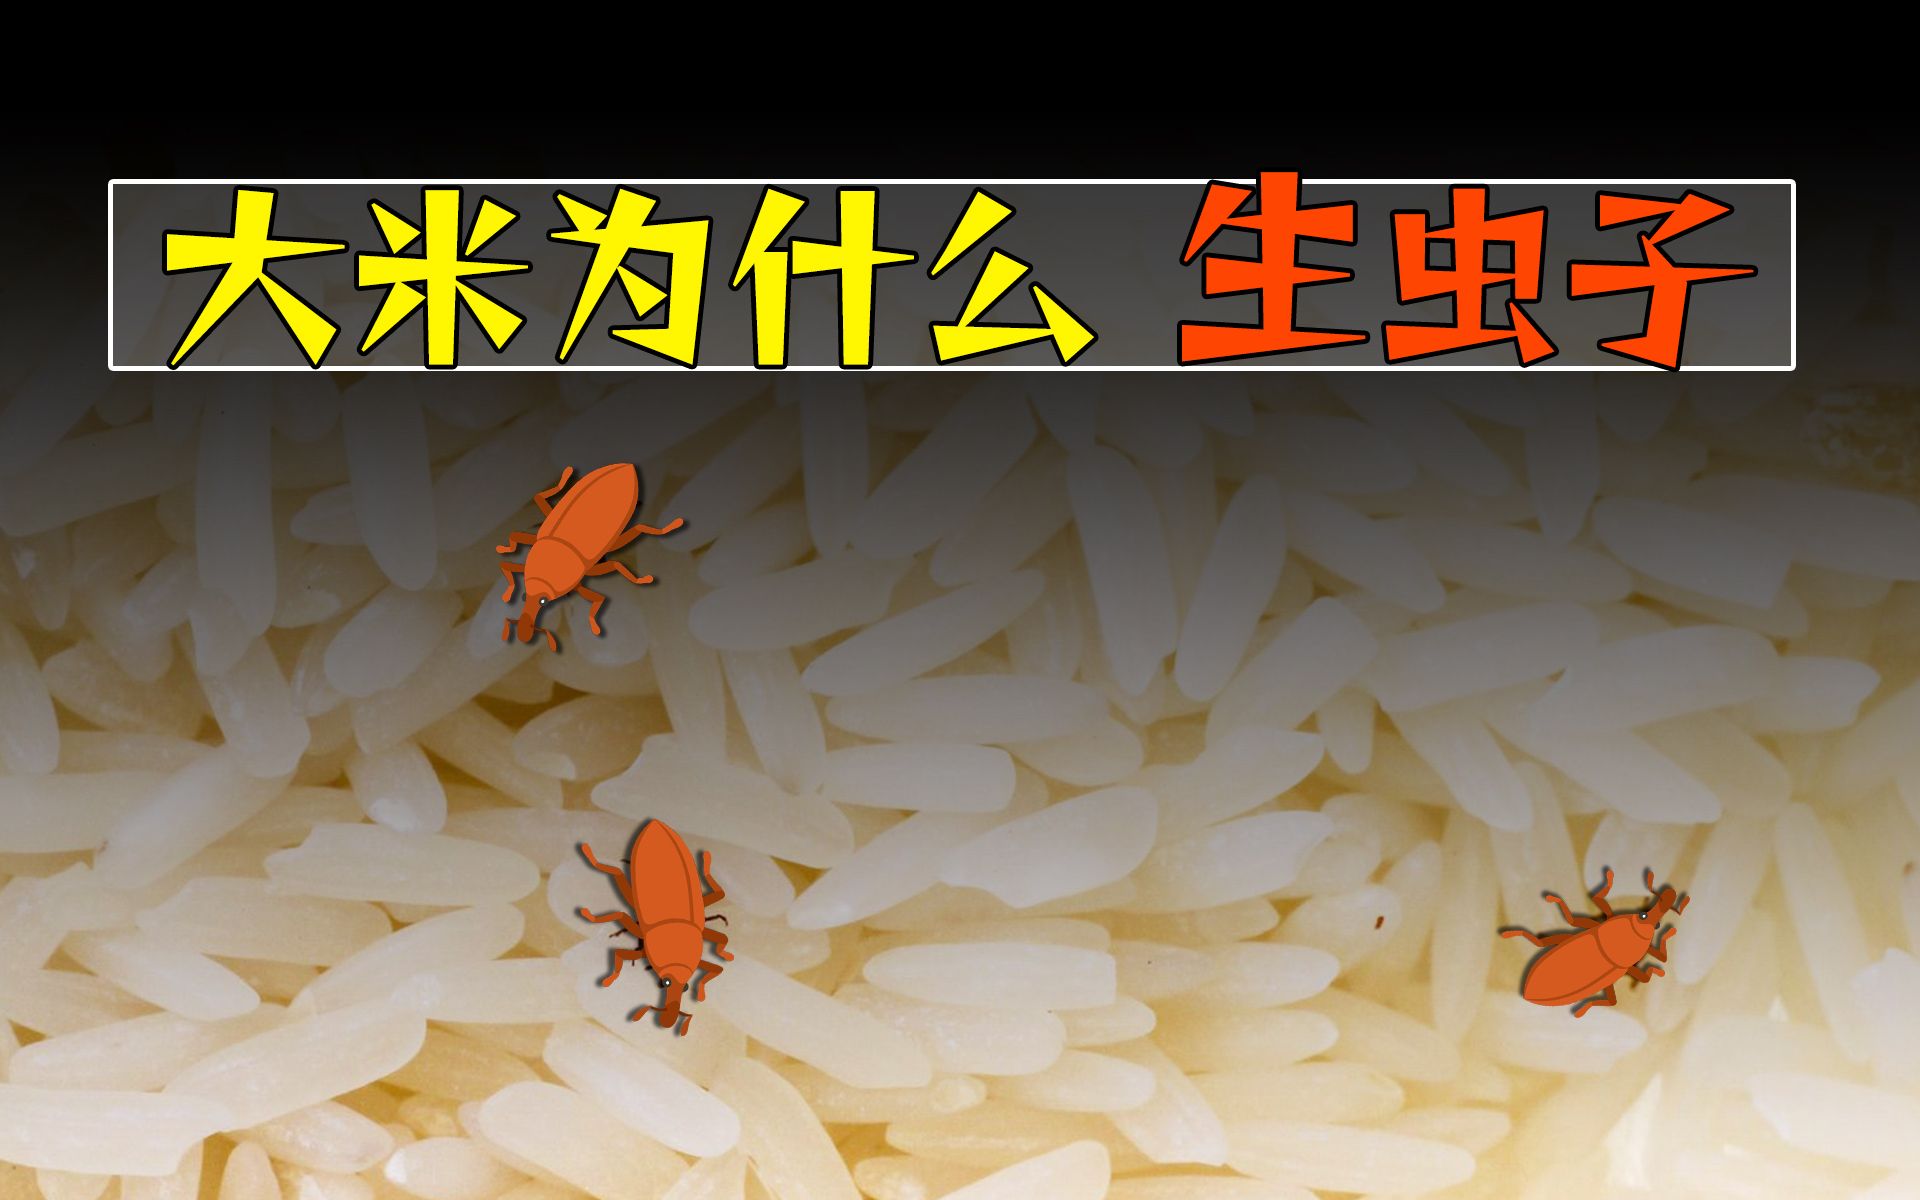 怎样能快速把大米和虫子分开，米里面的虫用什么办法让它跑出来